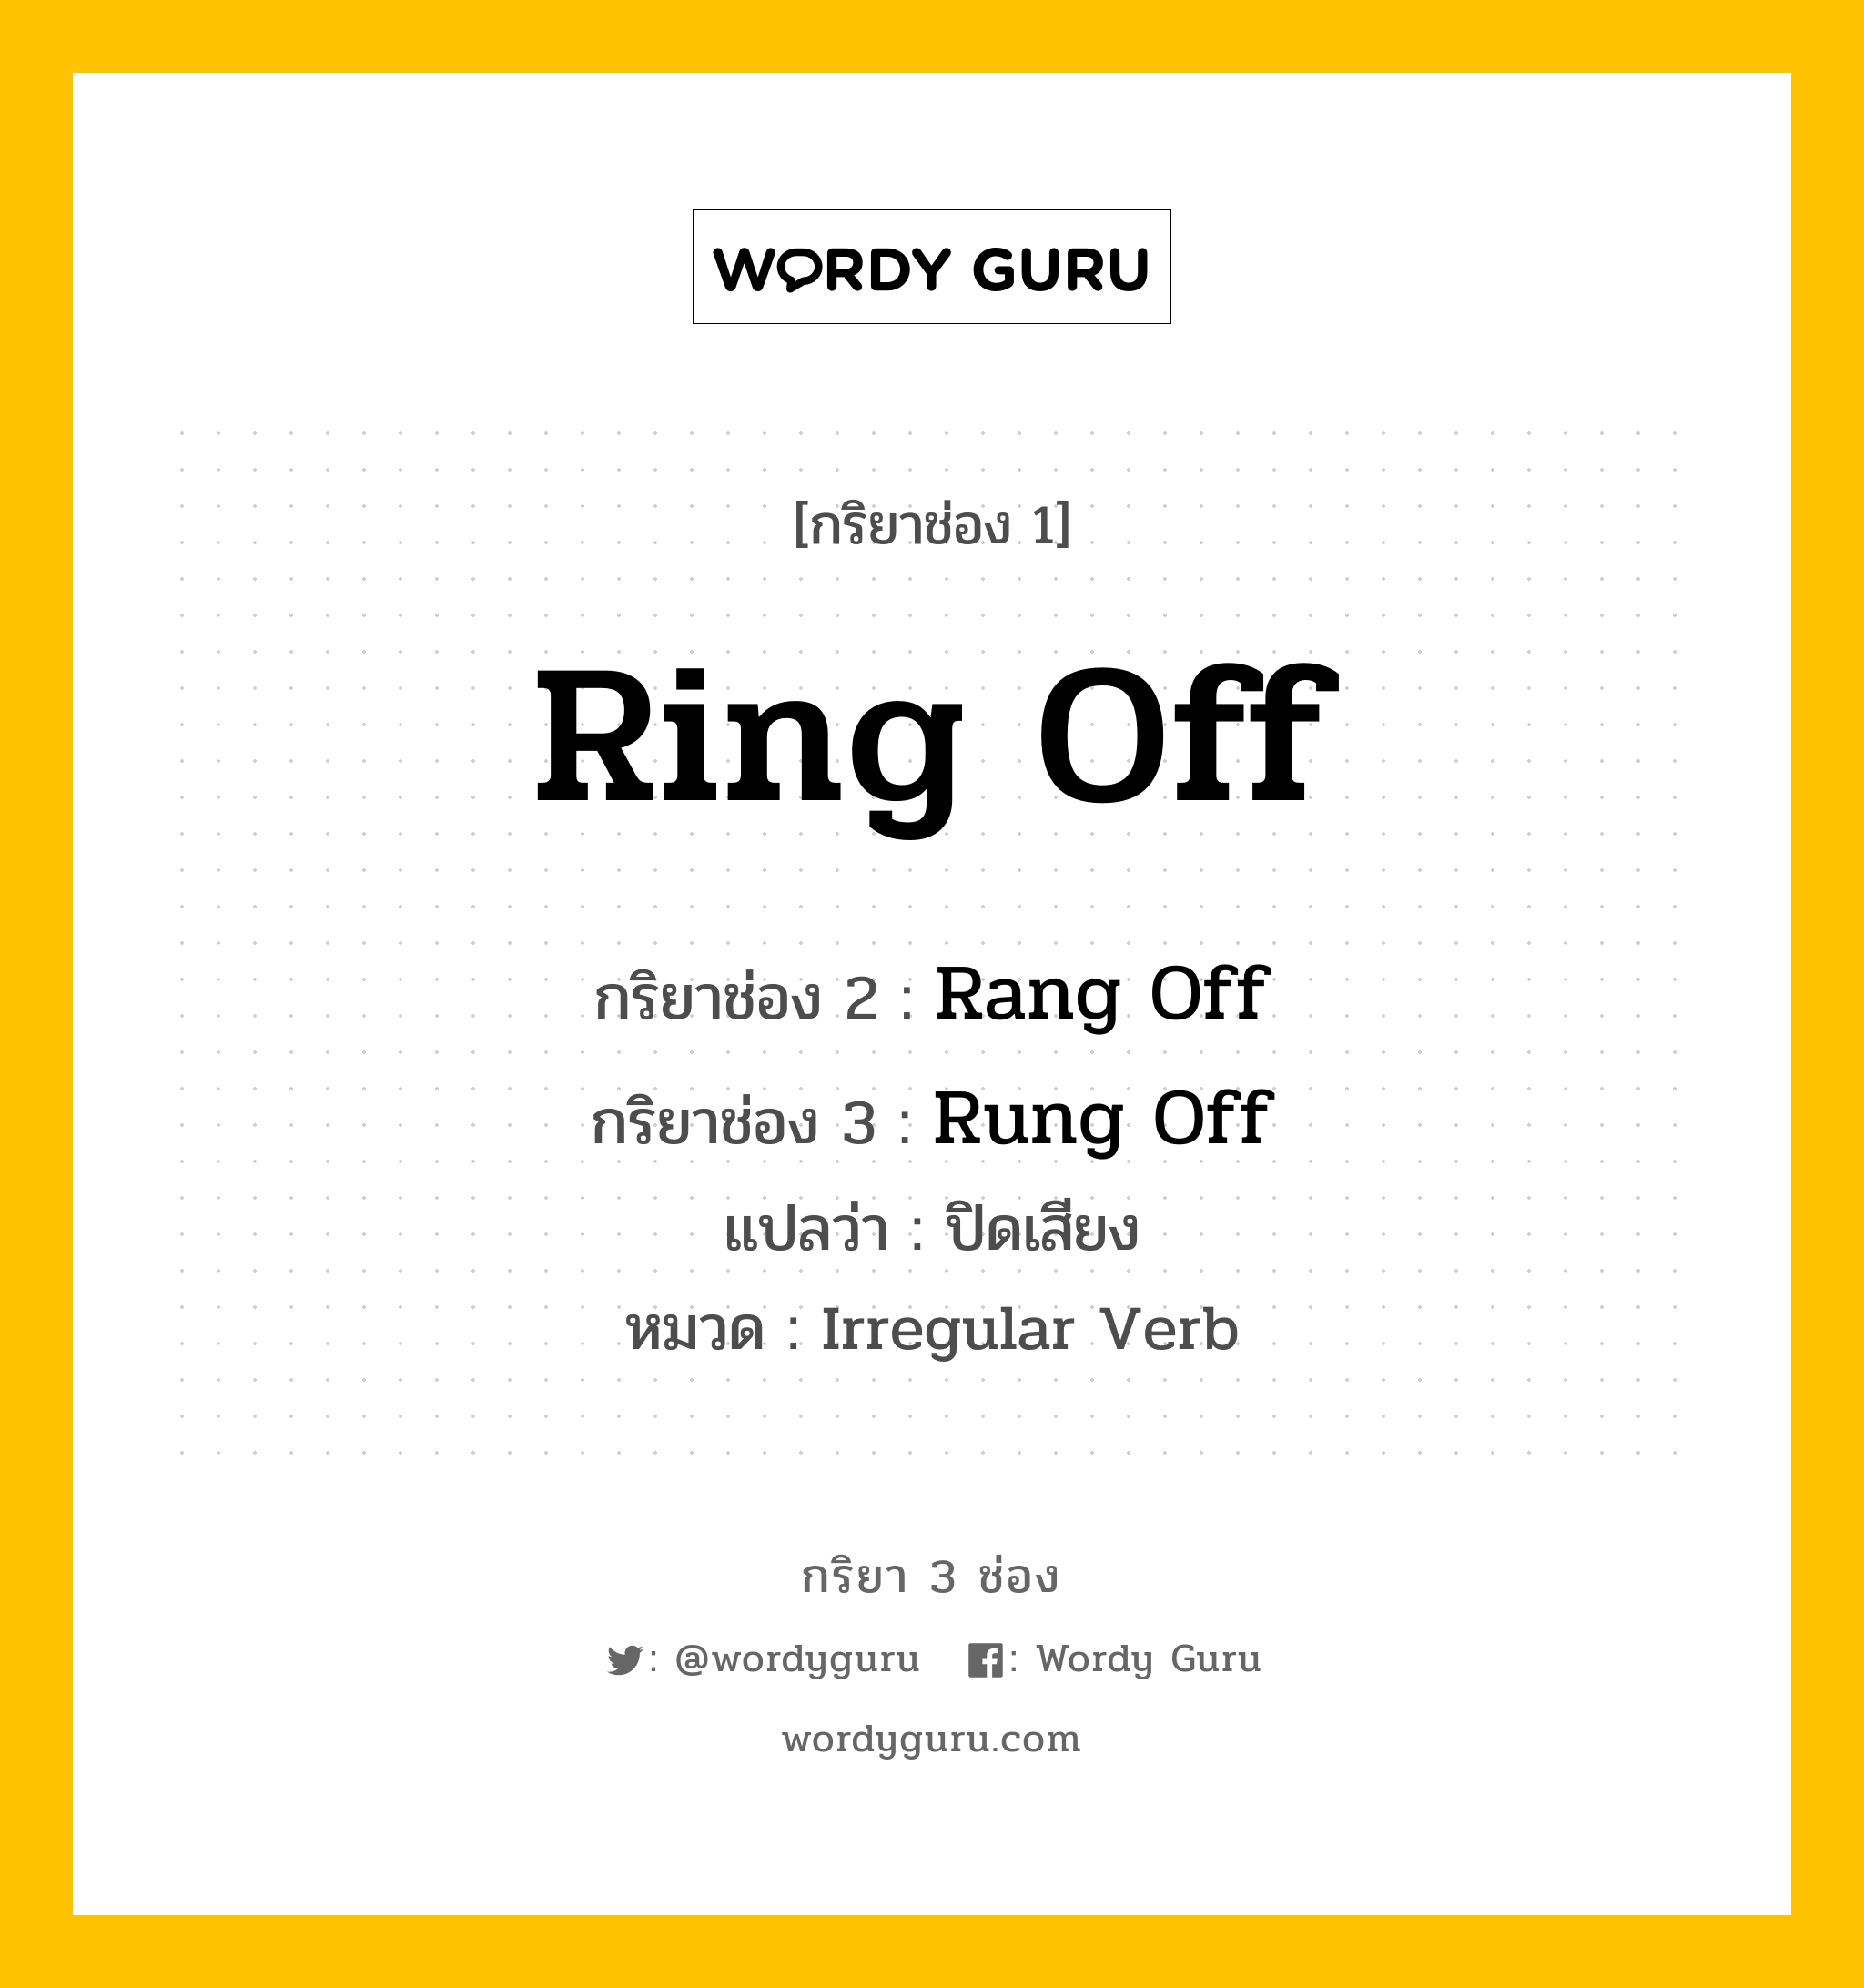 กริยา 3 ช่อง ของ Ring Off คืออะไร?, กริยาช่อง 1 Ring Off กริยาช่อง 2 Rang Off กริยาช่อง 3 Rung Off แปลว่า ปิดเสียง หมวด Irregular Verb หมวด Irregular Verb